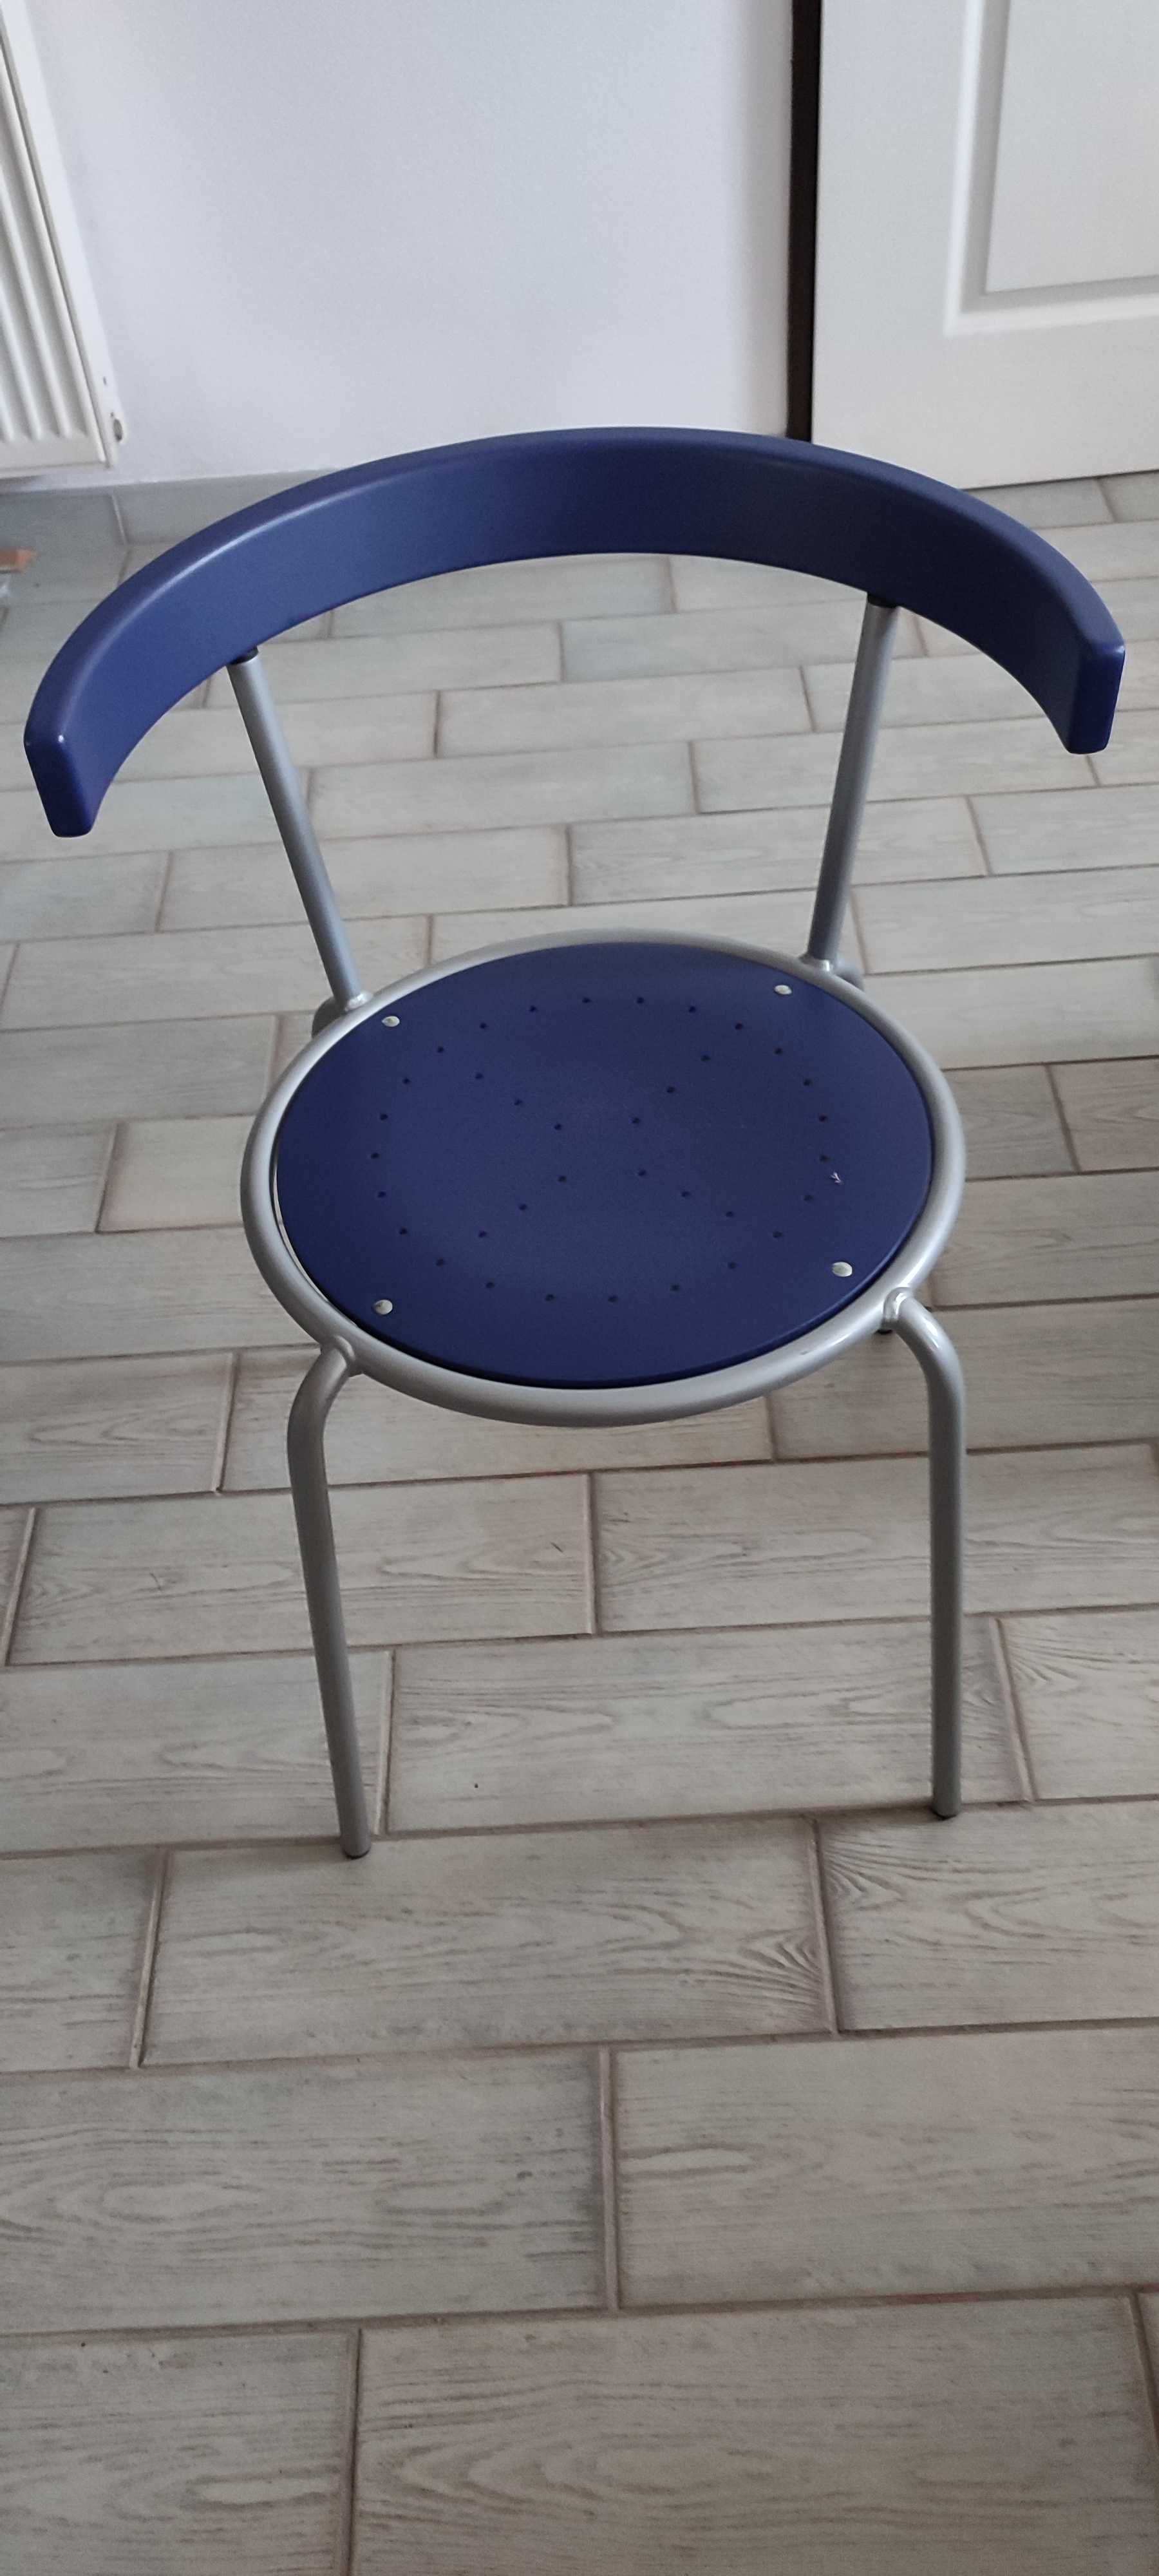 Krzesło okrągłe, kolory niebieski i szary